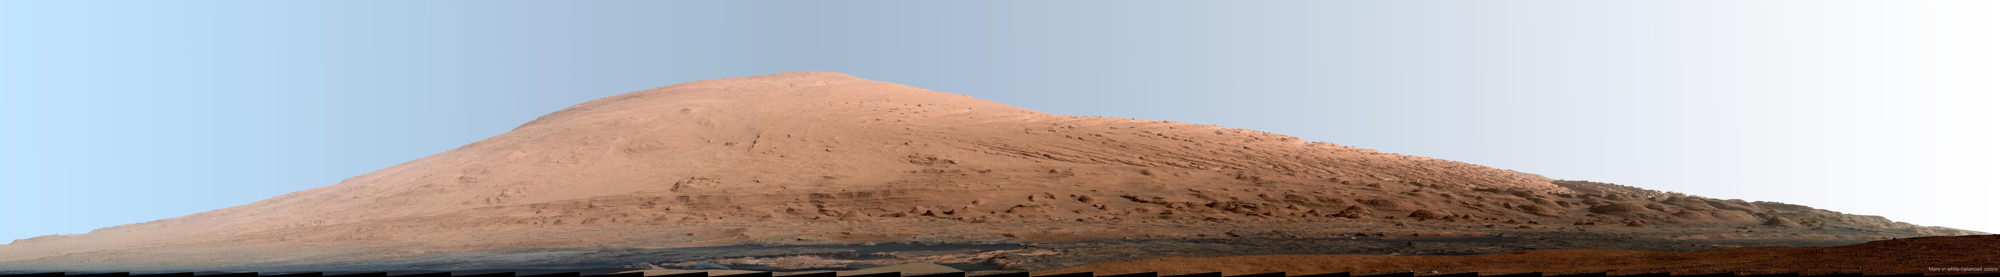 Марсианские горы созданы ветром, а не водой